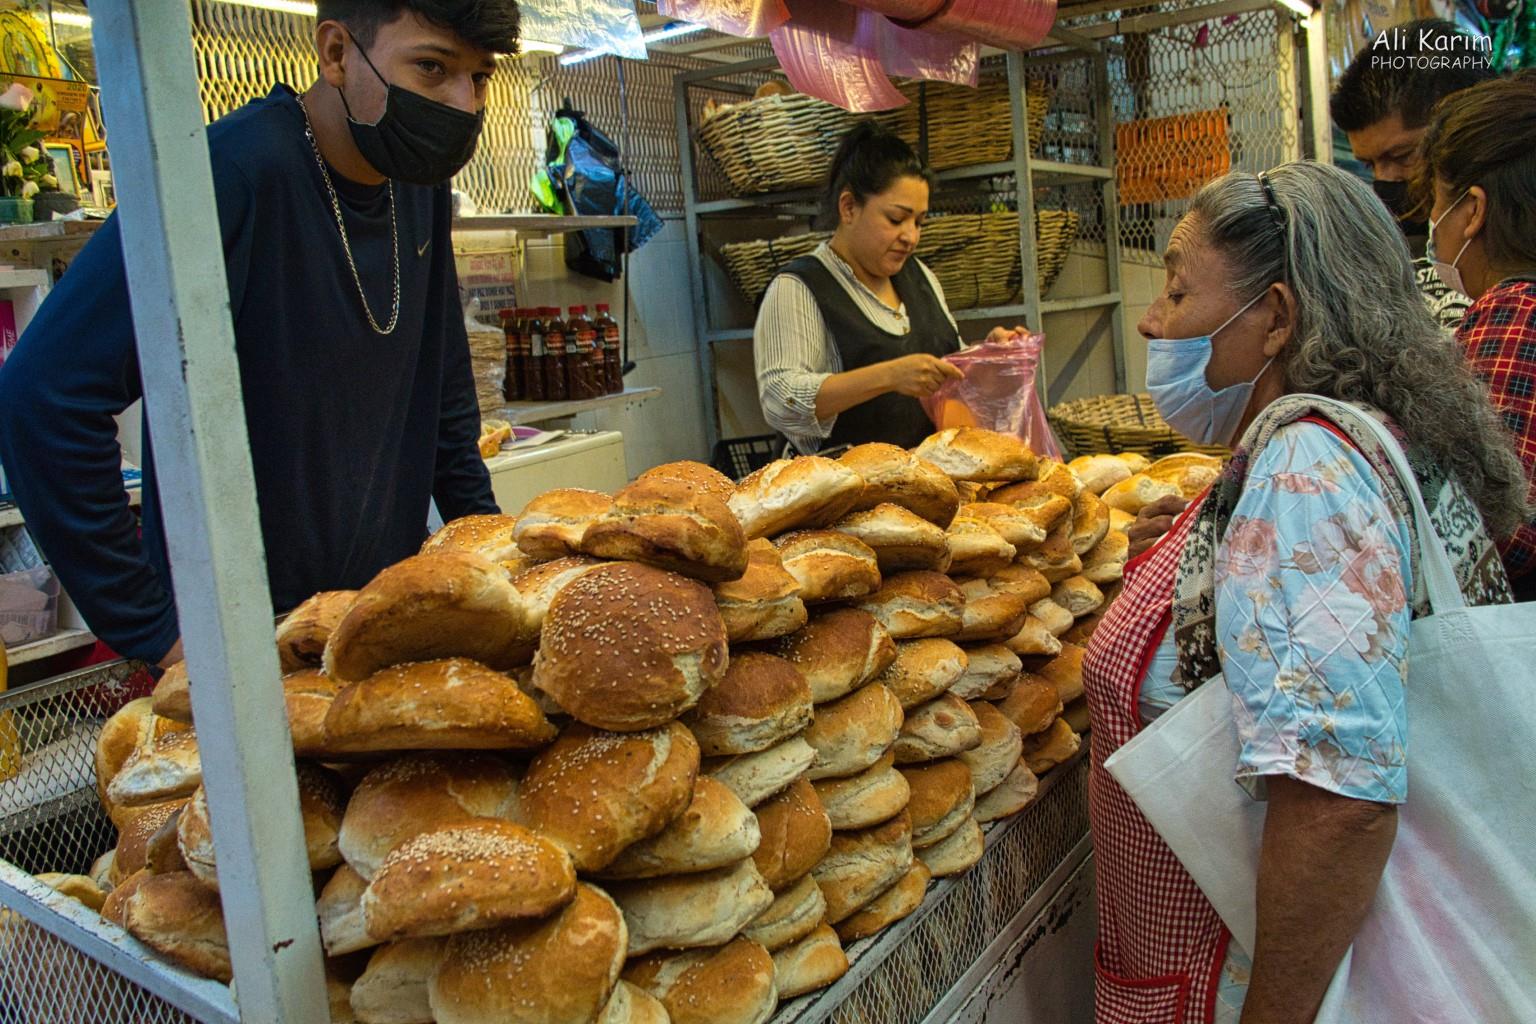 Puebla, Mexico Dec 2020, Lots of cemita bread which is unique to Puebla